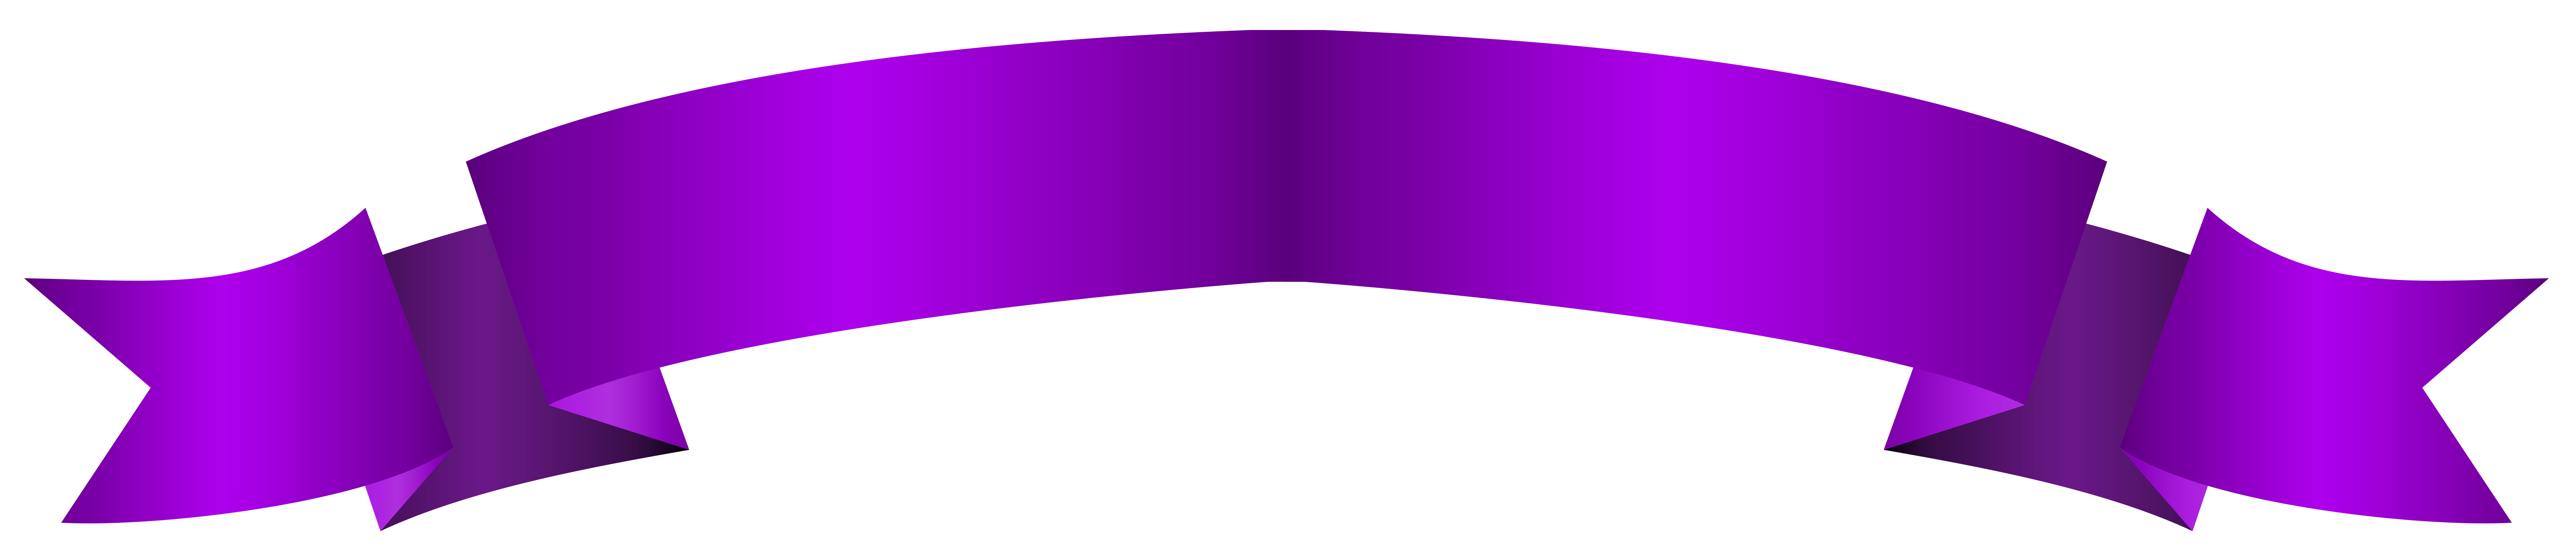 Фиолетовый баннер PNG фото